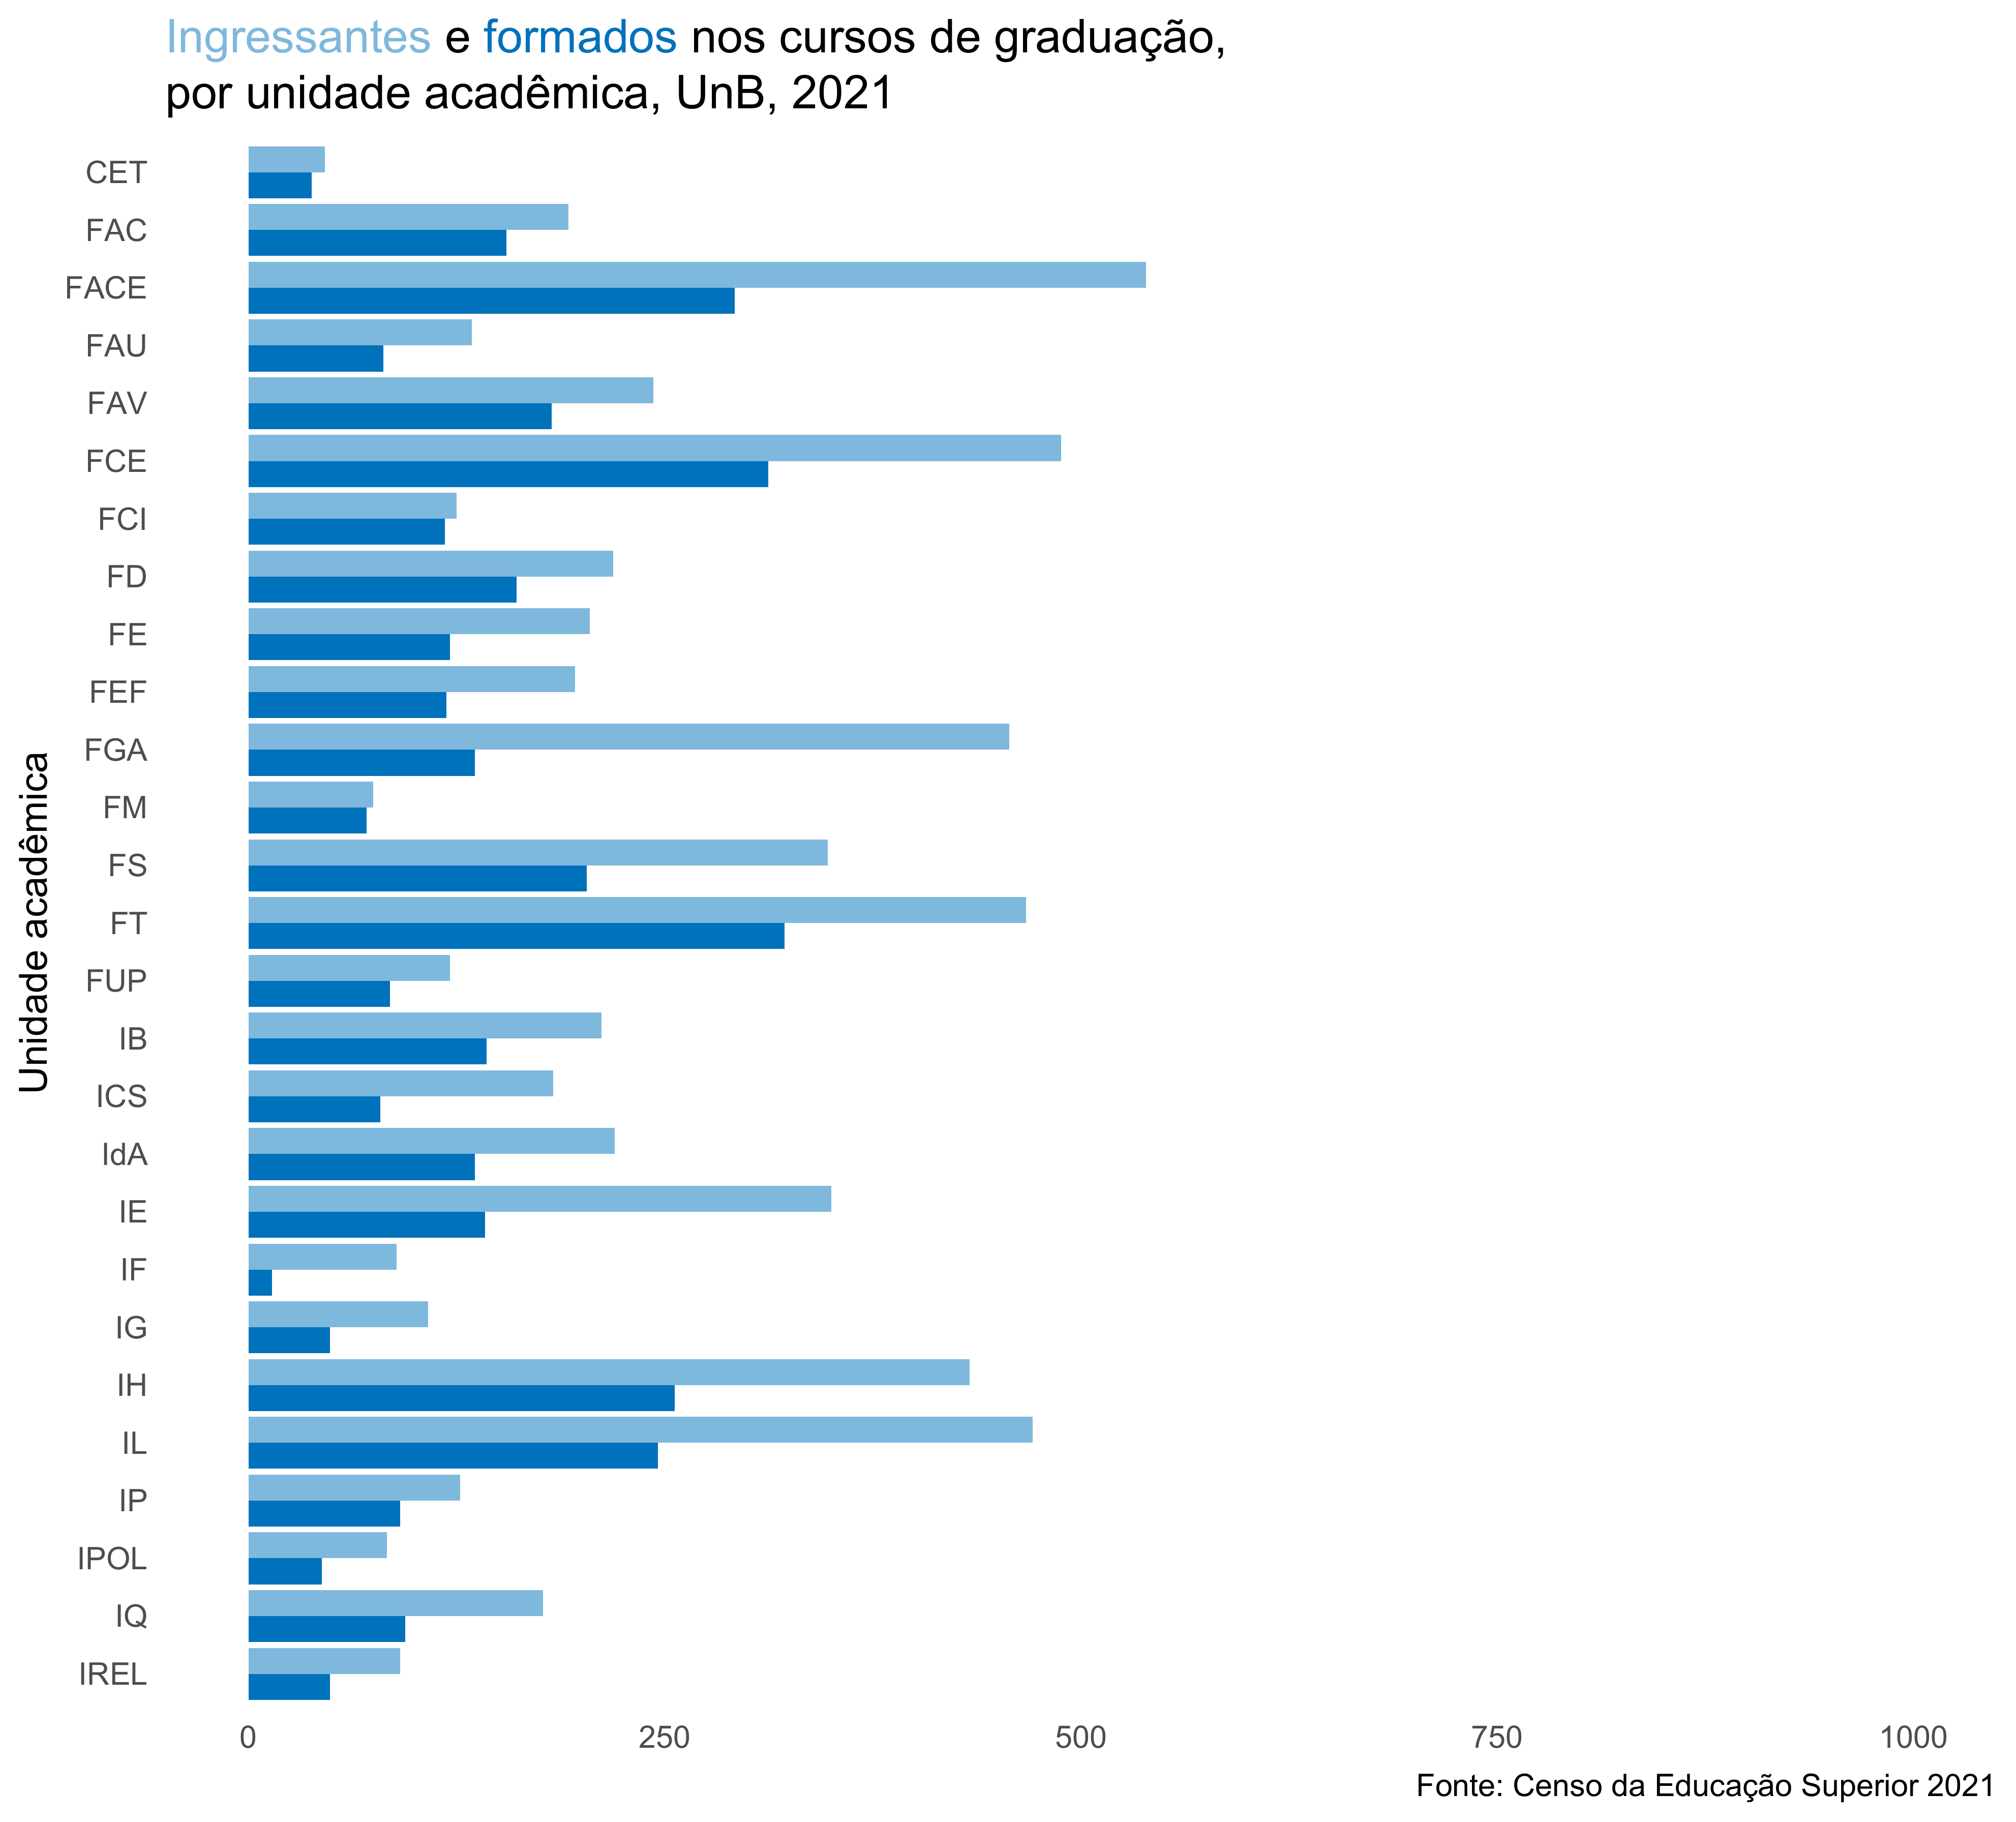 Ingressantes e formados nos cursos de graduação, por unidade acadêmica, UnB, 2021